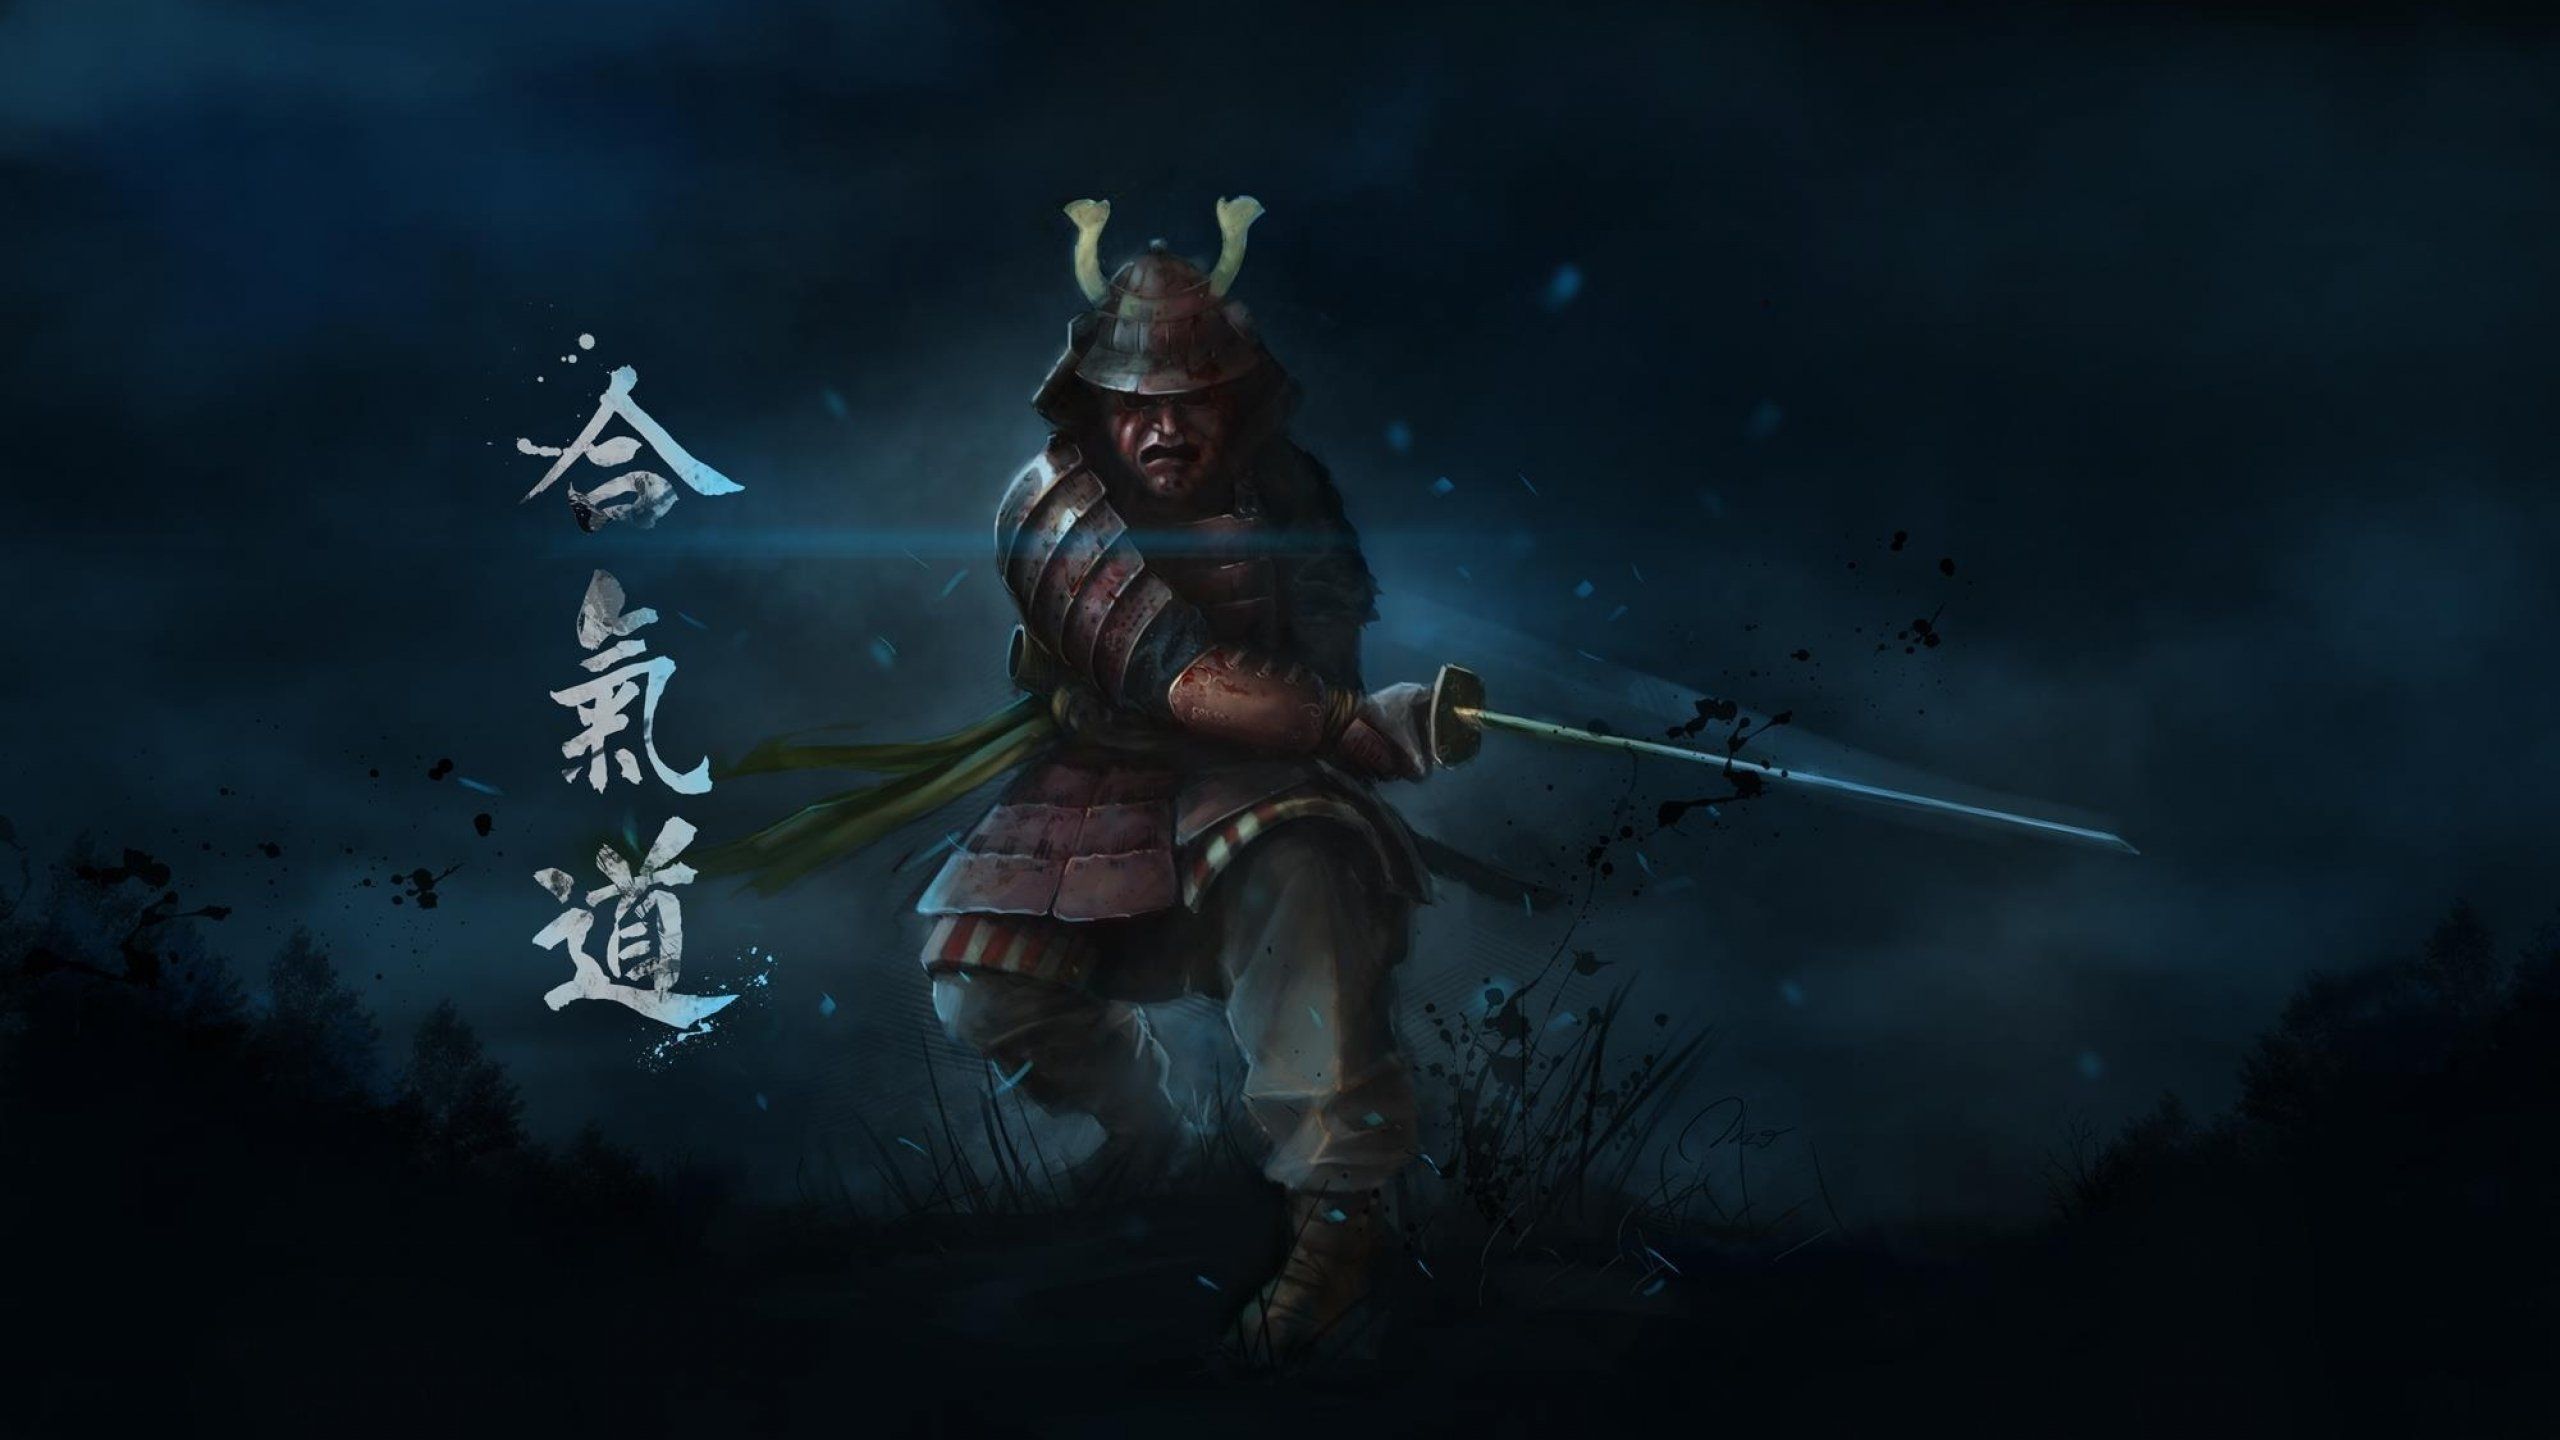 Samurai Warrior Wallpaper Free Samurai Warrior Background